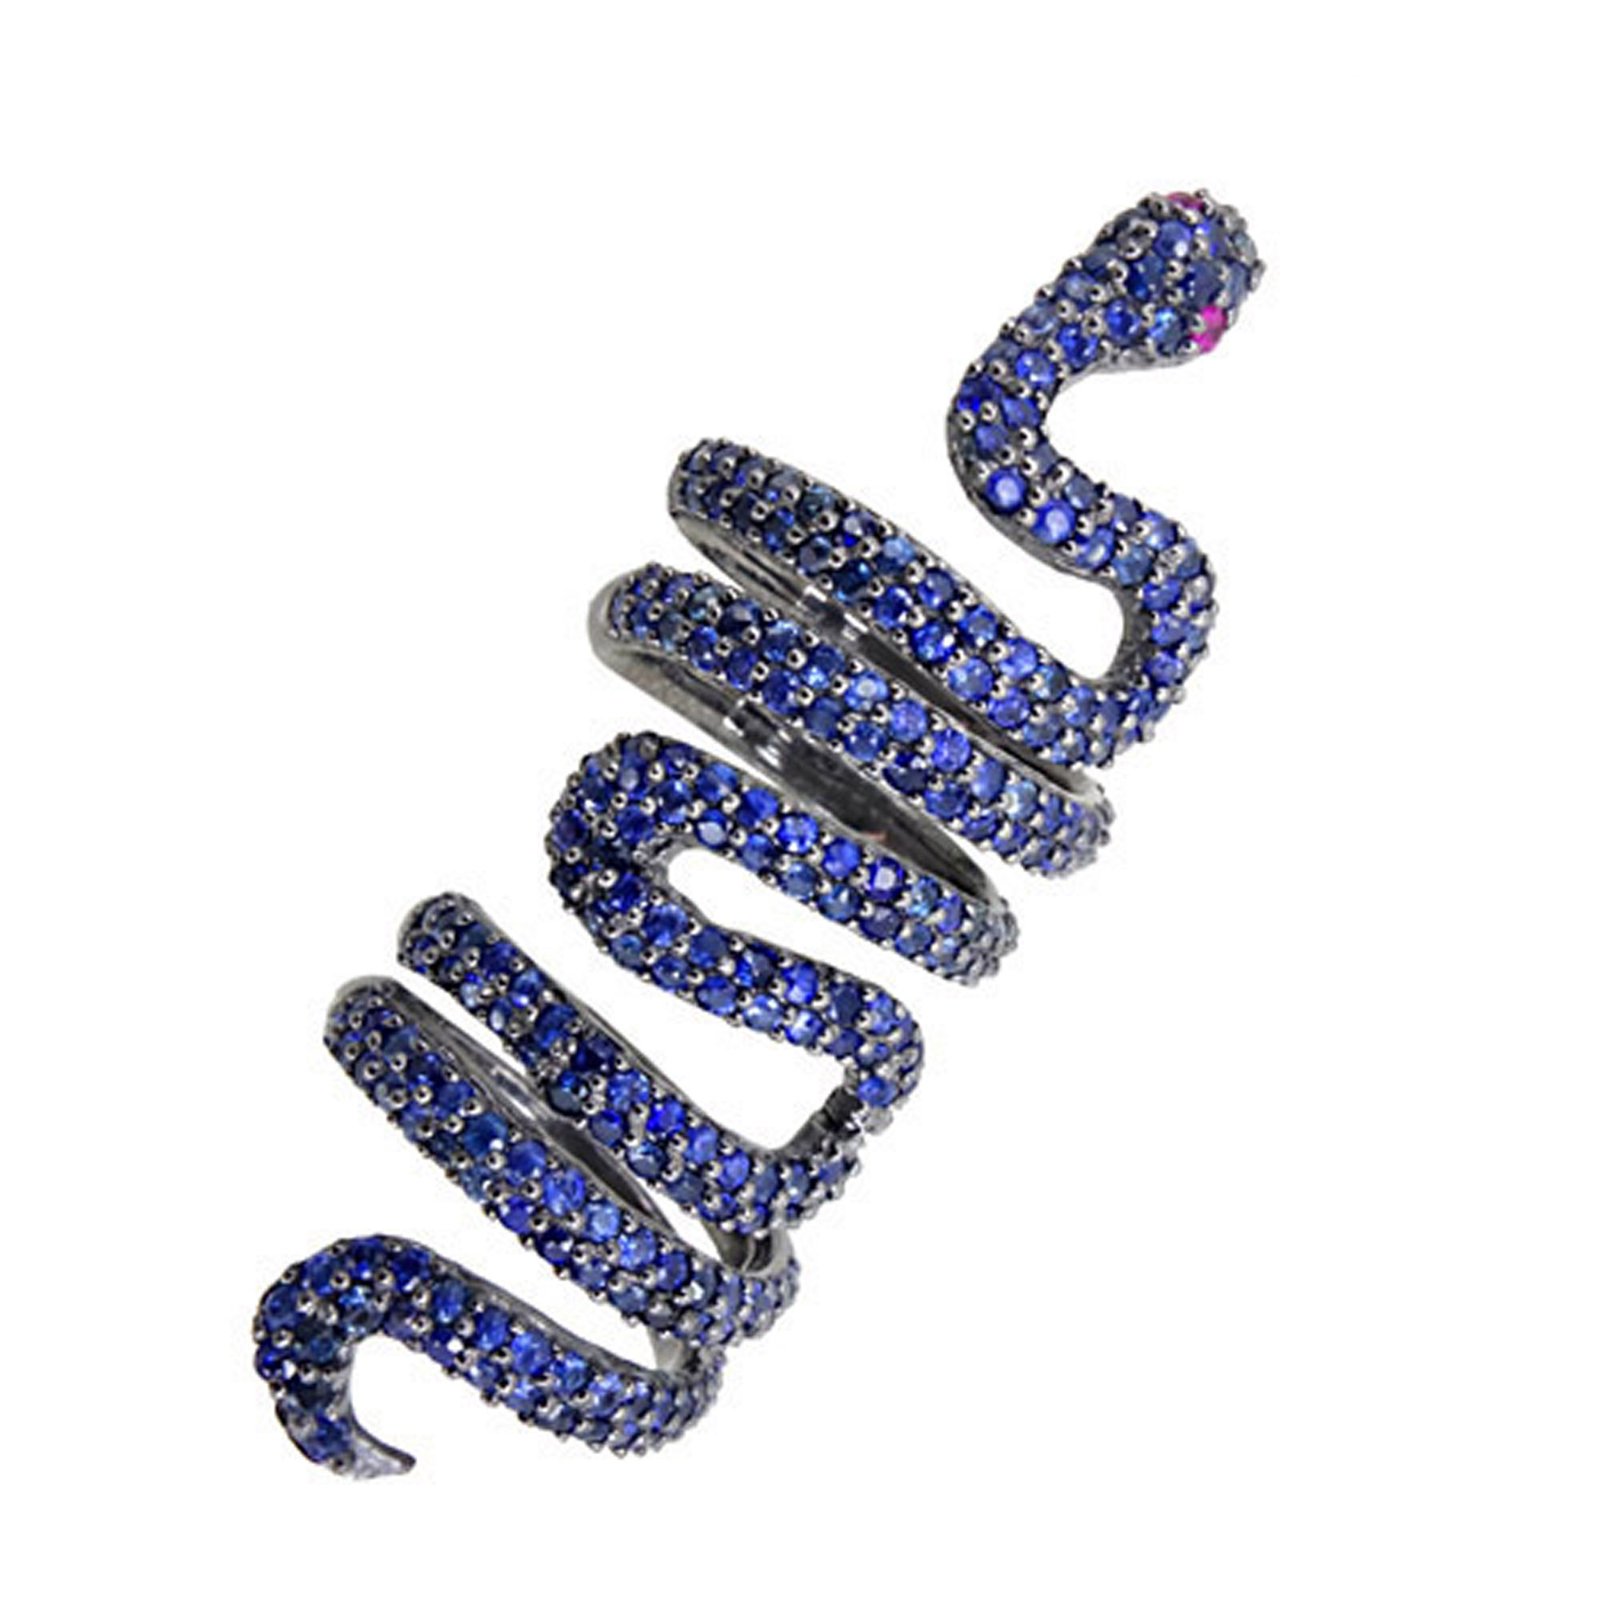 Blue sapphire spiral full finger snake knuckle ring